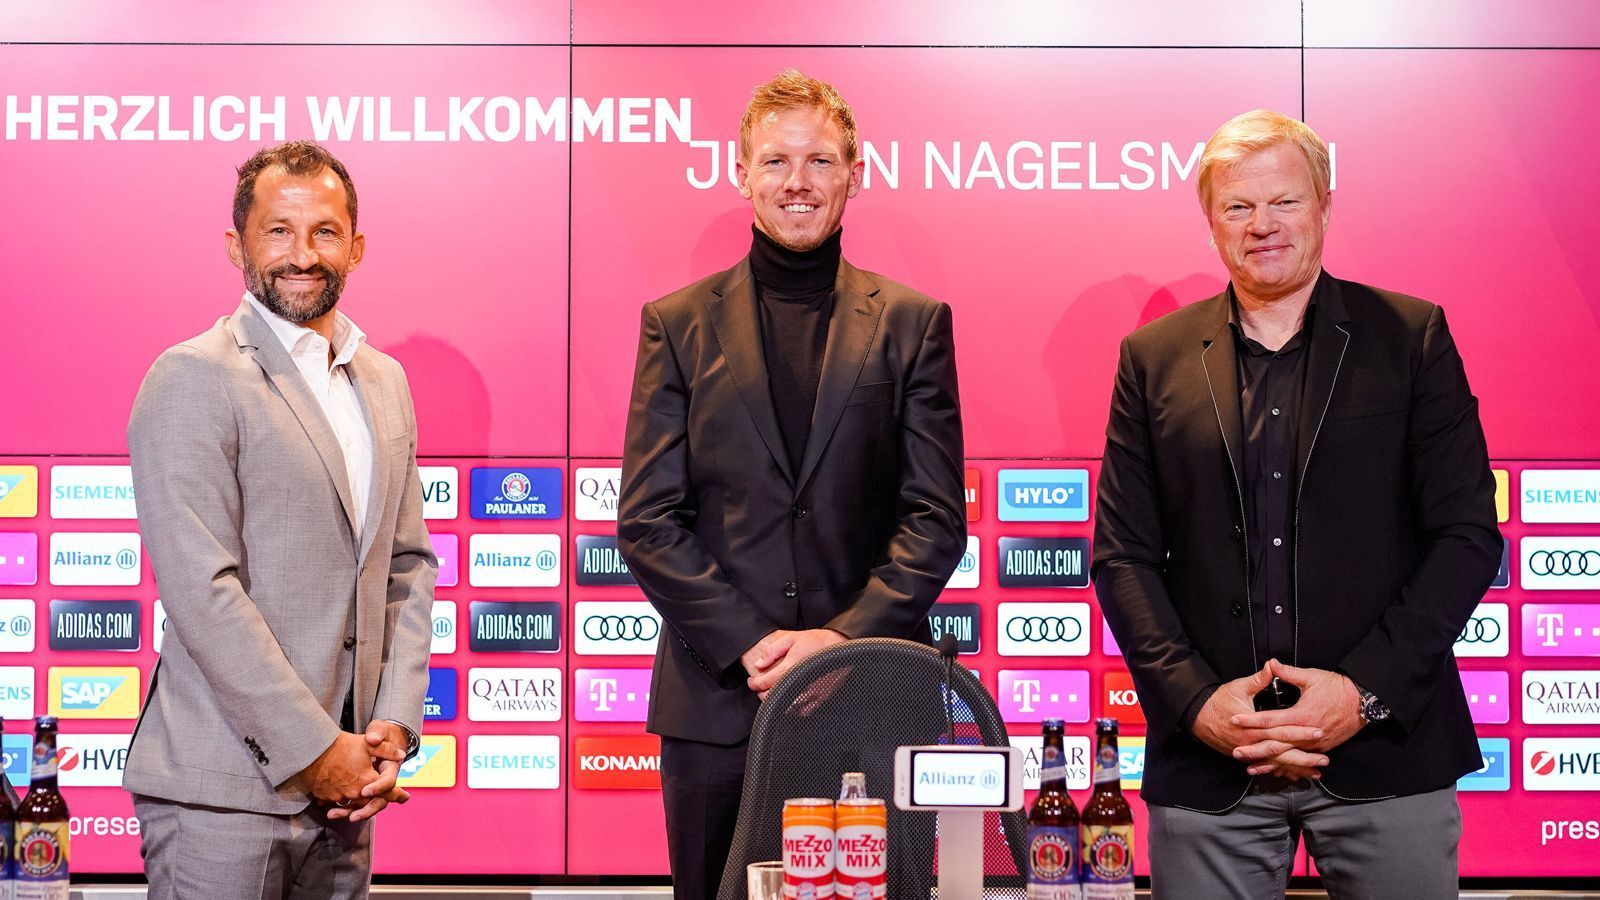 
                <strong>Vorstellung von Julian Nagelsmann</strong><br>
                Der FC Bayern verkündete im April 2022 die Verpflichtung von Julian Nagelsmann als Nachfolger von Trainer Hansi Flick und stattete den damals 33-Jährigen mit einem Fünfjahresvertrag aus. Ablöse an RB Leipzig: 25 Millionen Euro. "Wir werden viel Freude an ihm haben", sagte Sportvorstand Hasan Salihamidzic (li.).
              